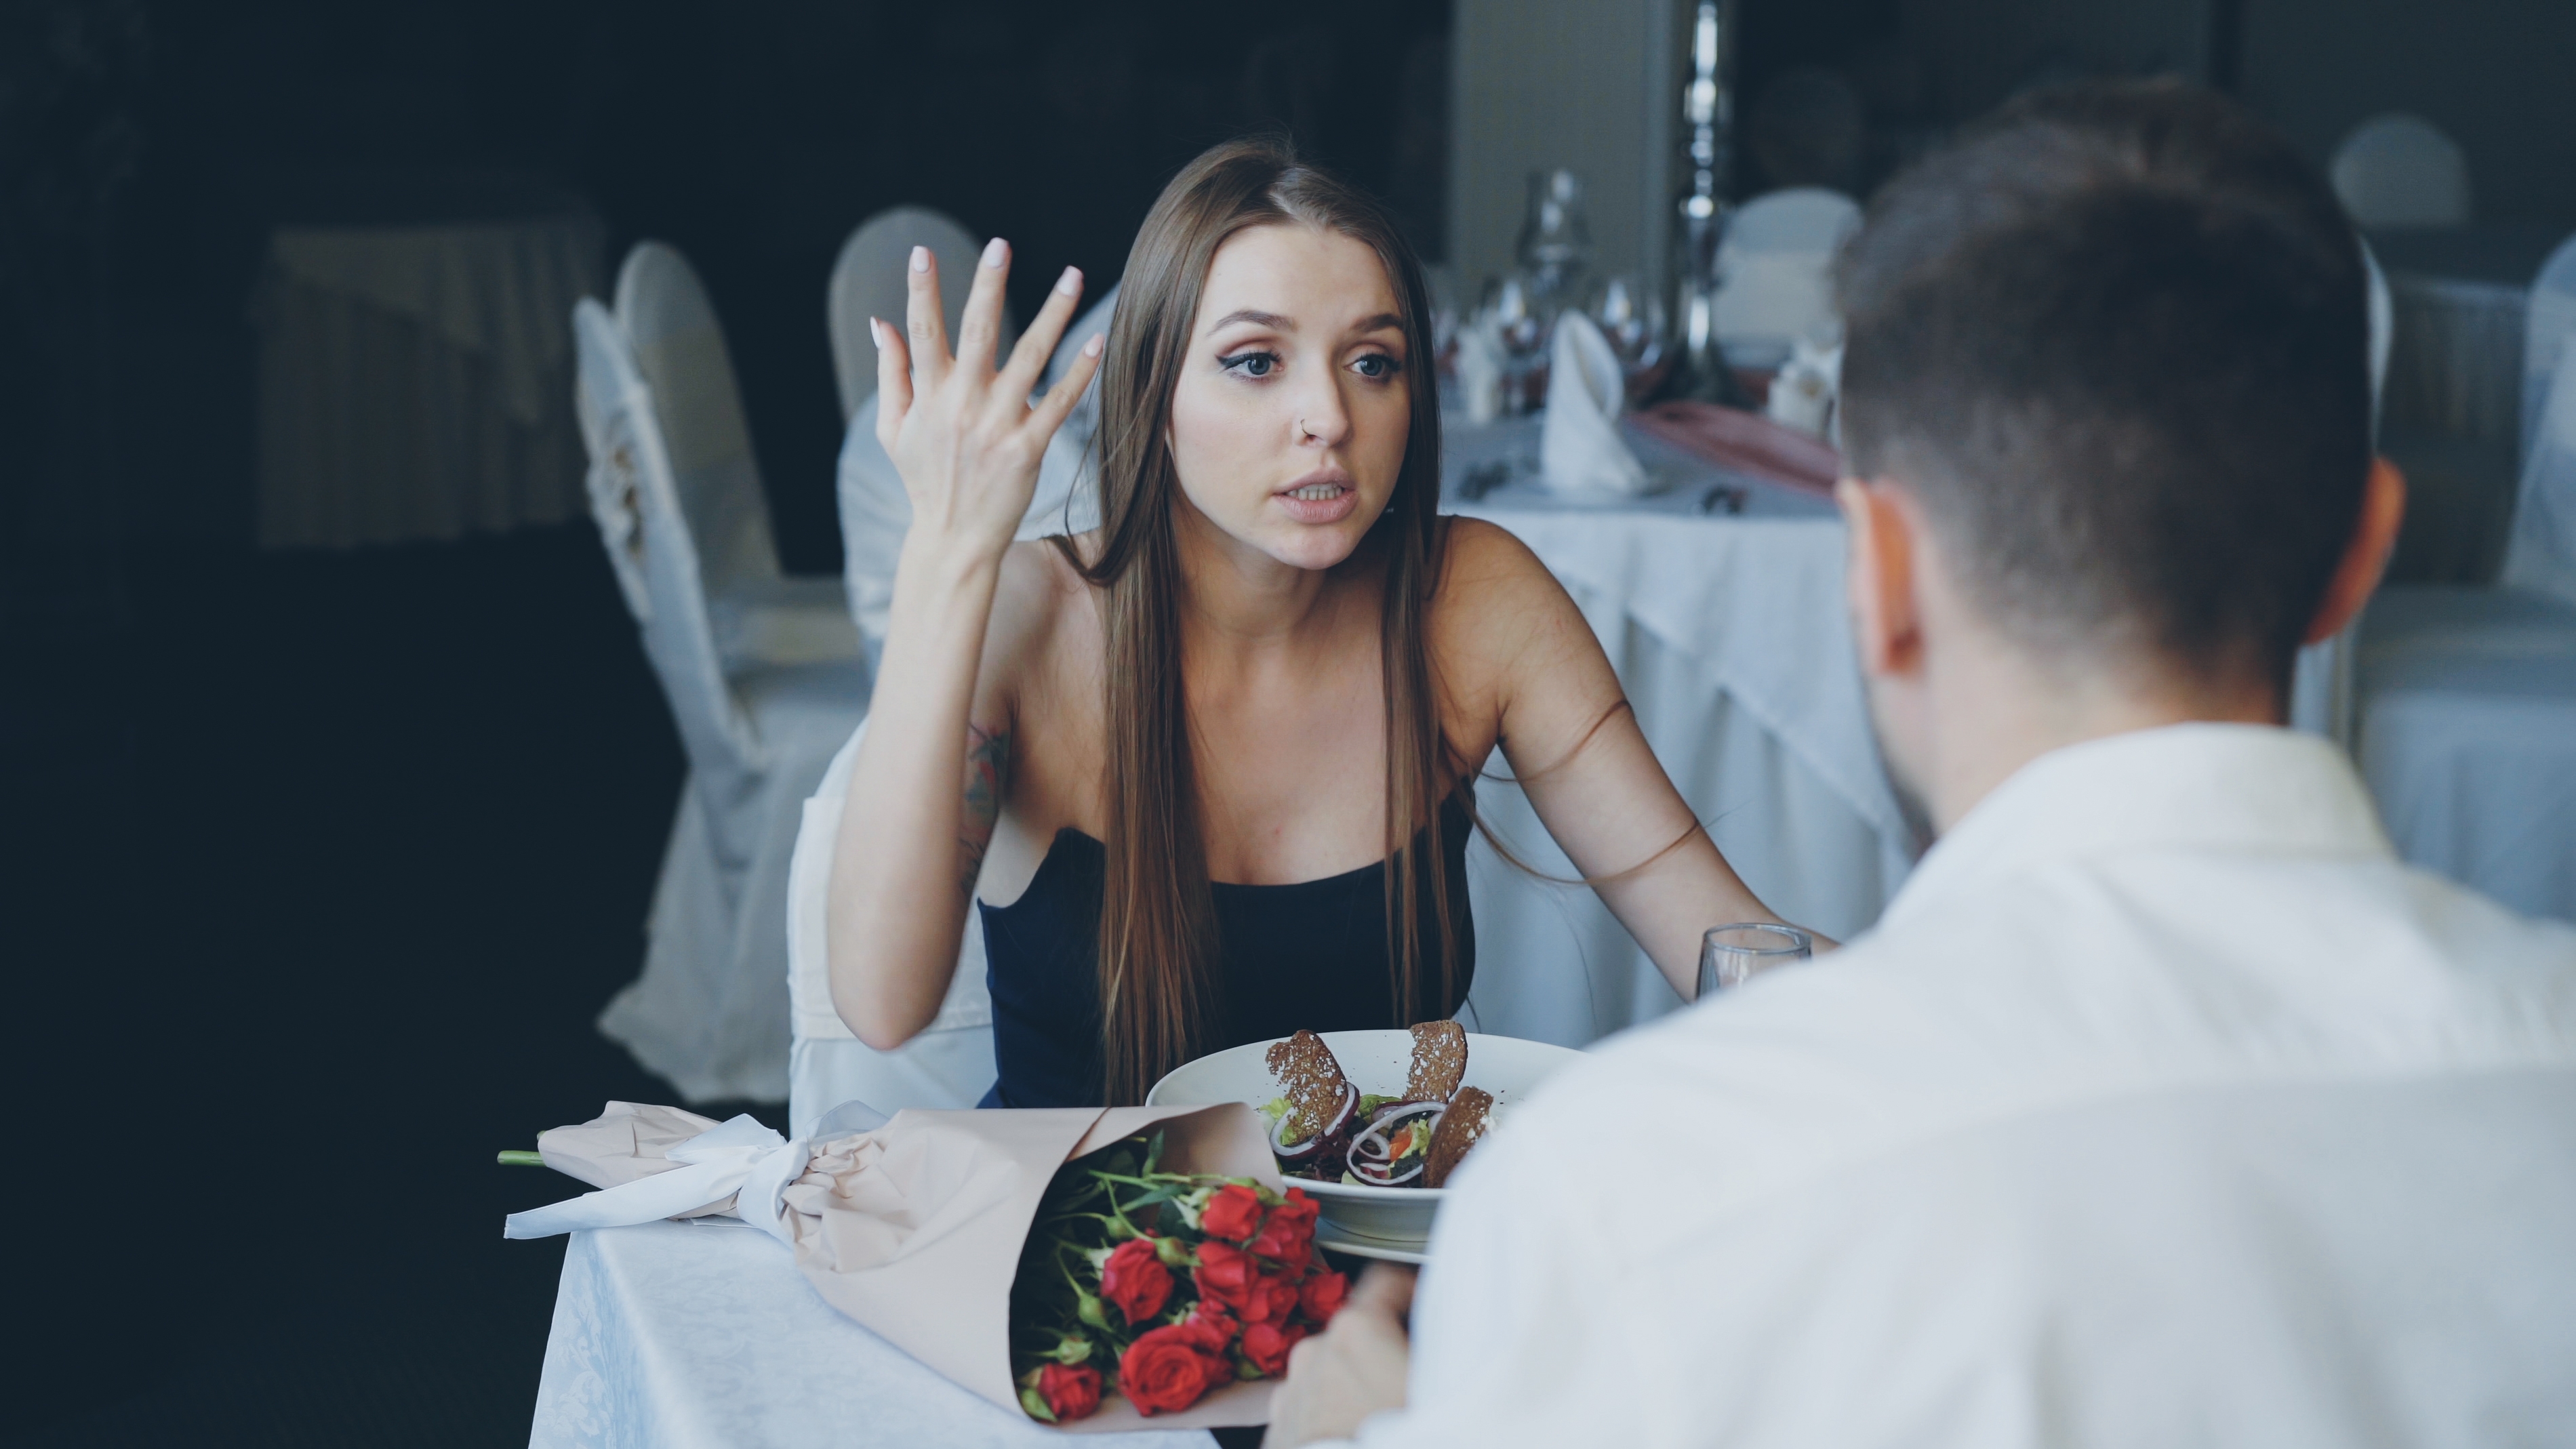 Frau streitet sich mit ihrem Liebhaber bei einem Date | Quelle: Shutterstock